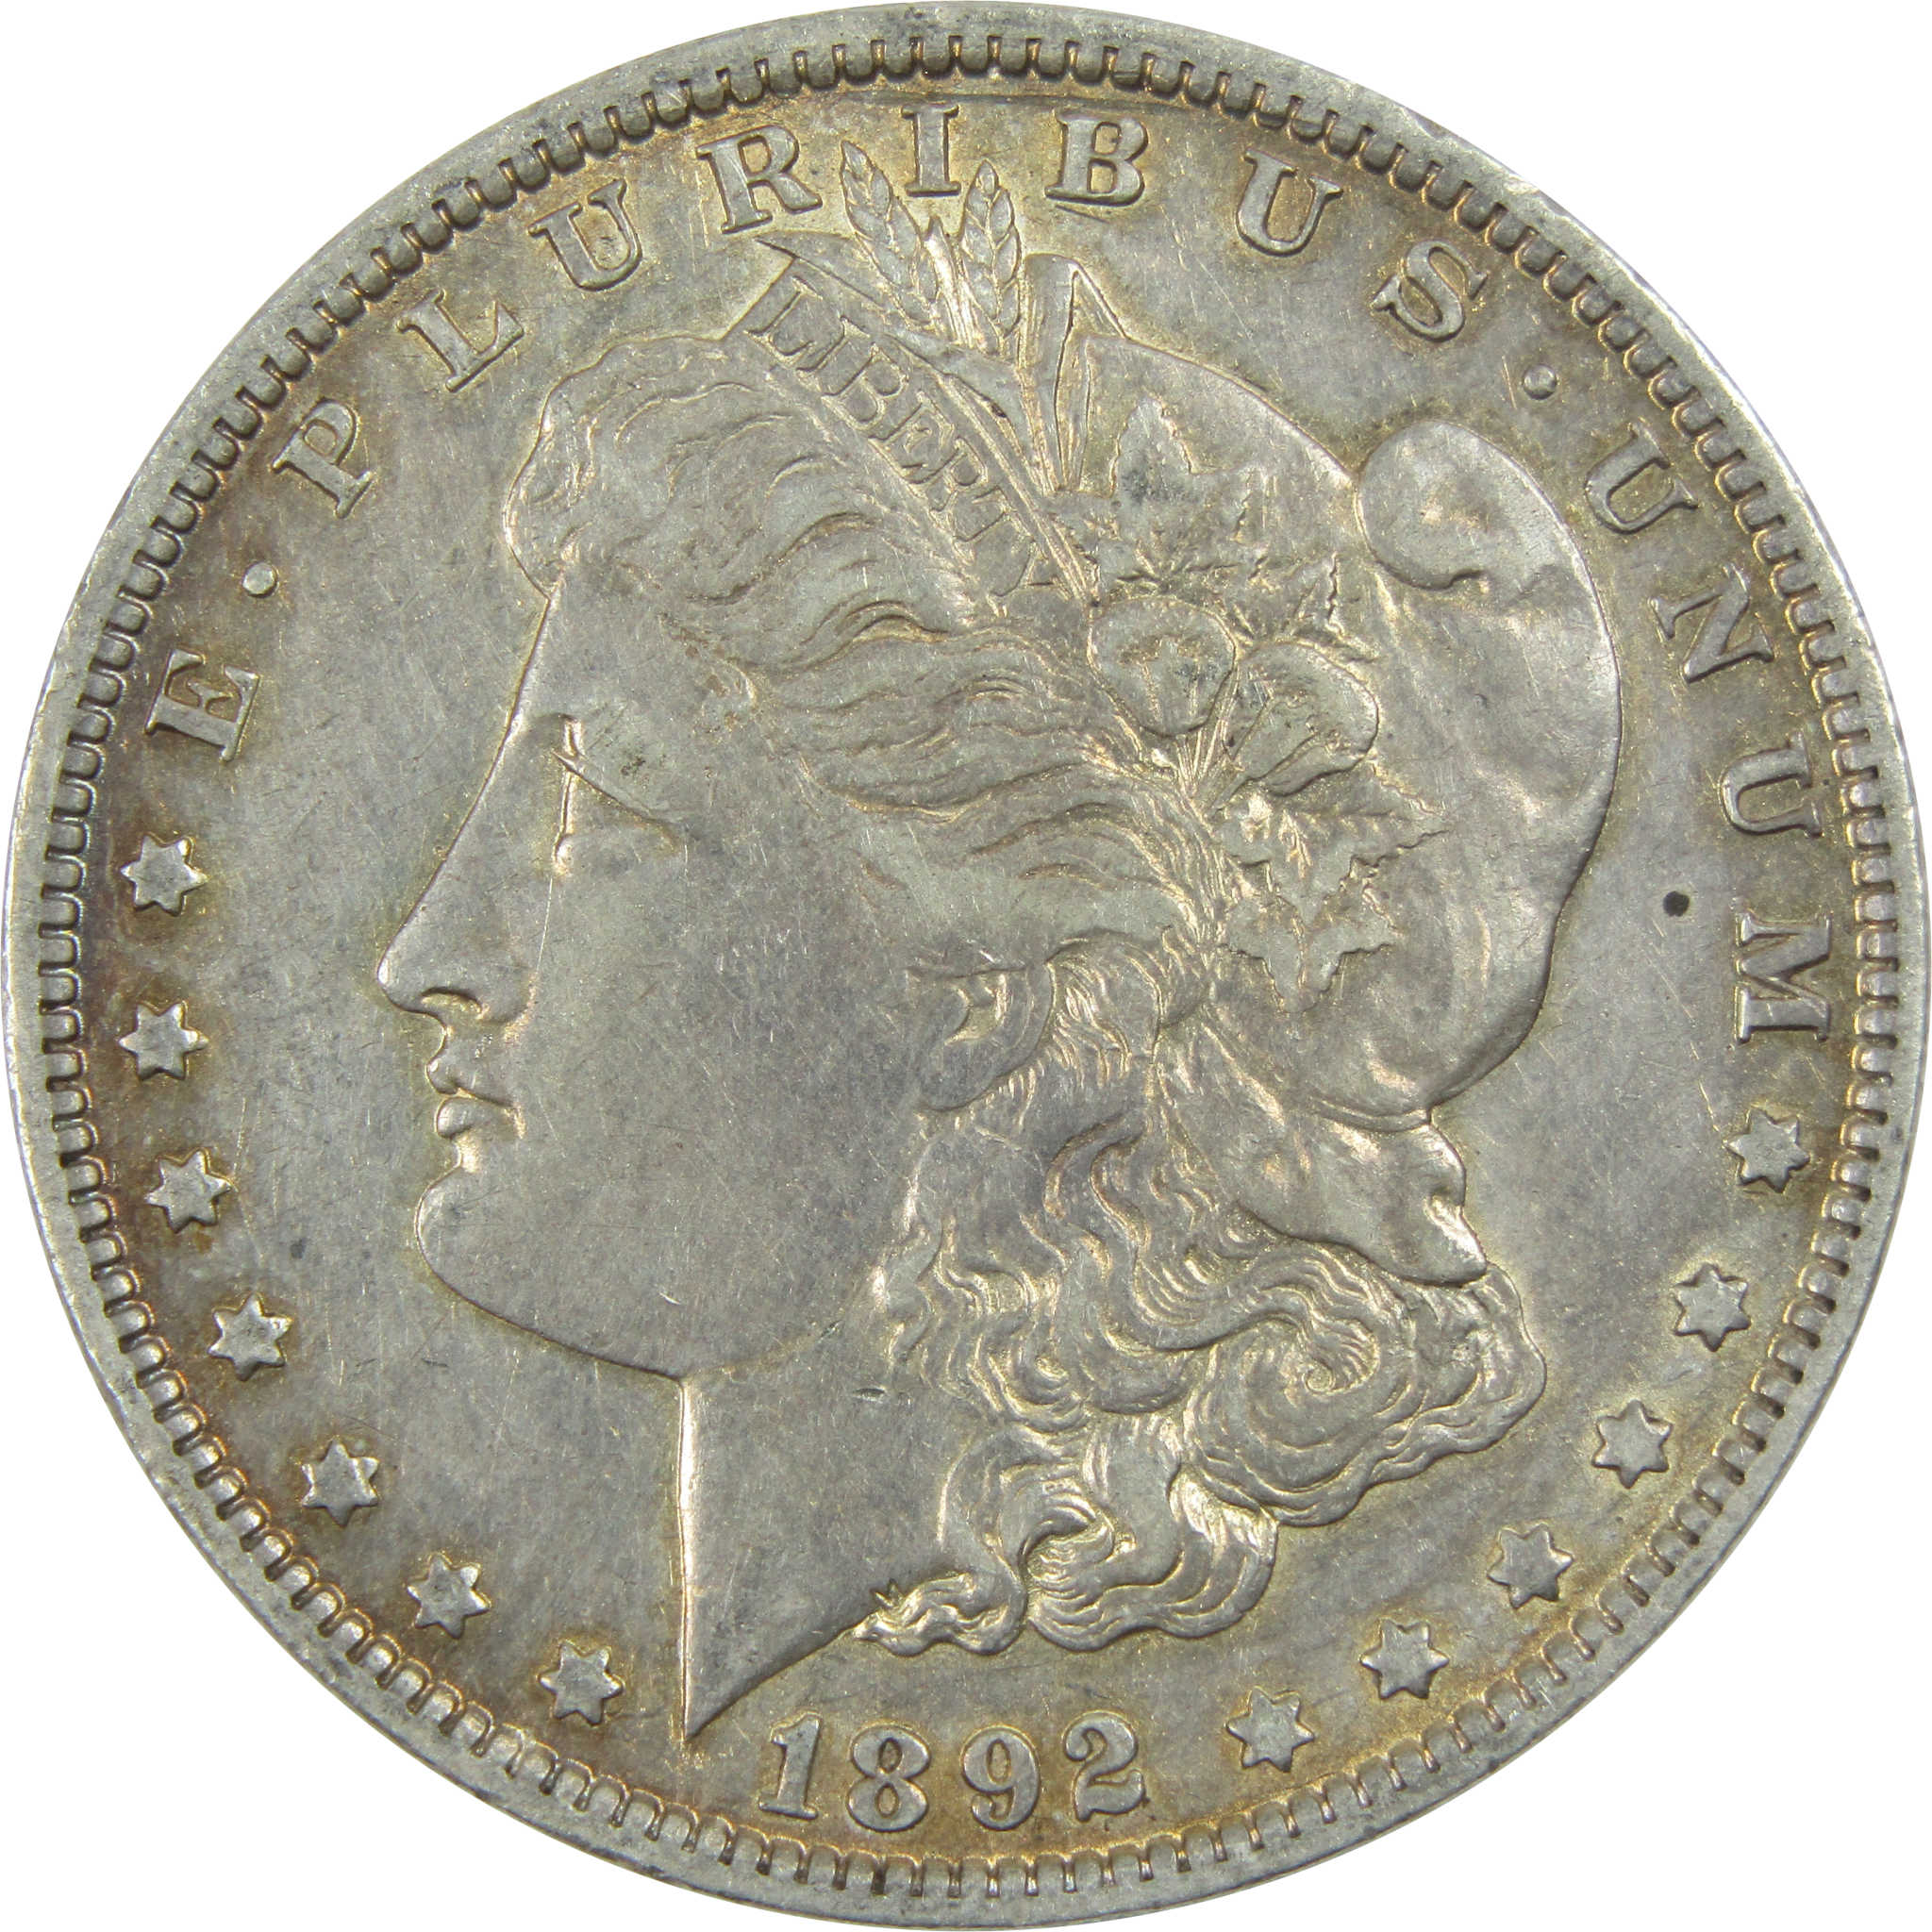 1892 O Morgan Dollar XF EF Extremely Fine Details Silver $1 SKU:I13352